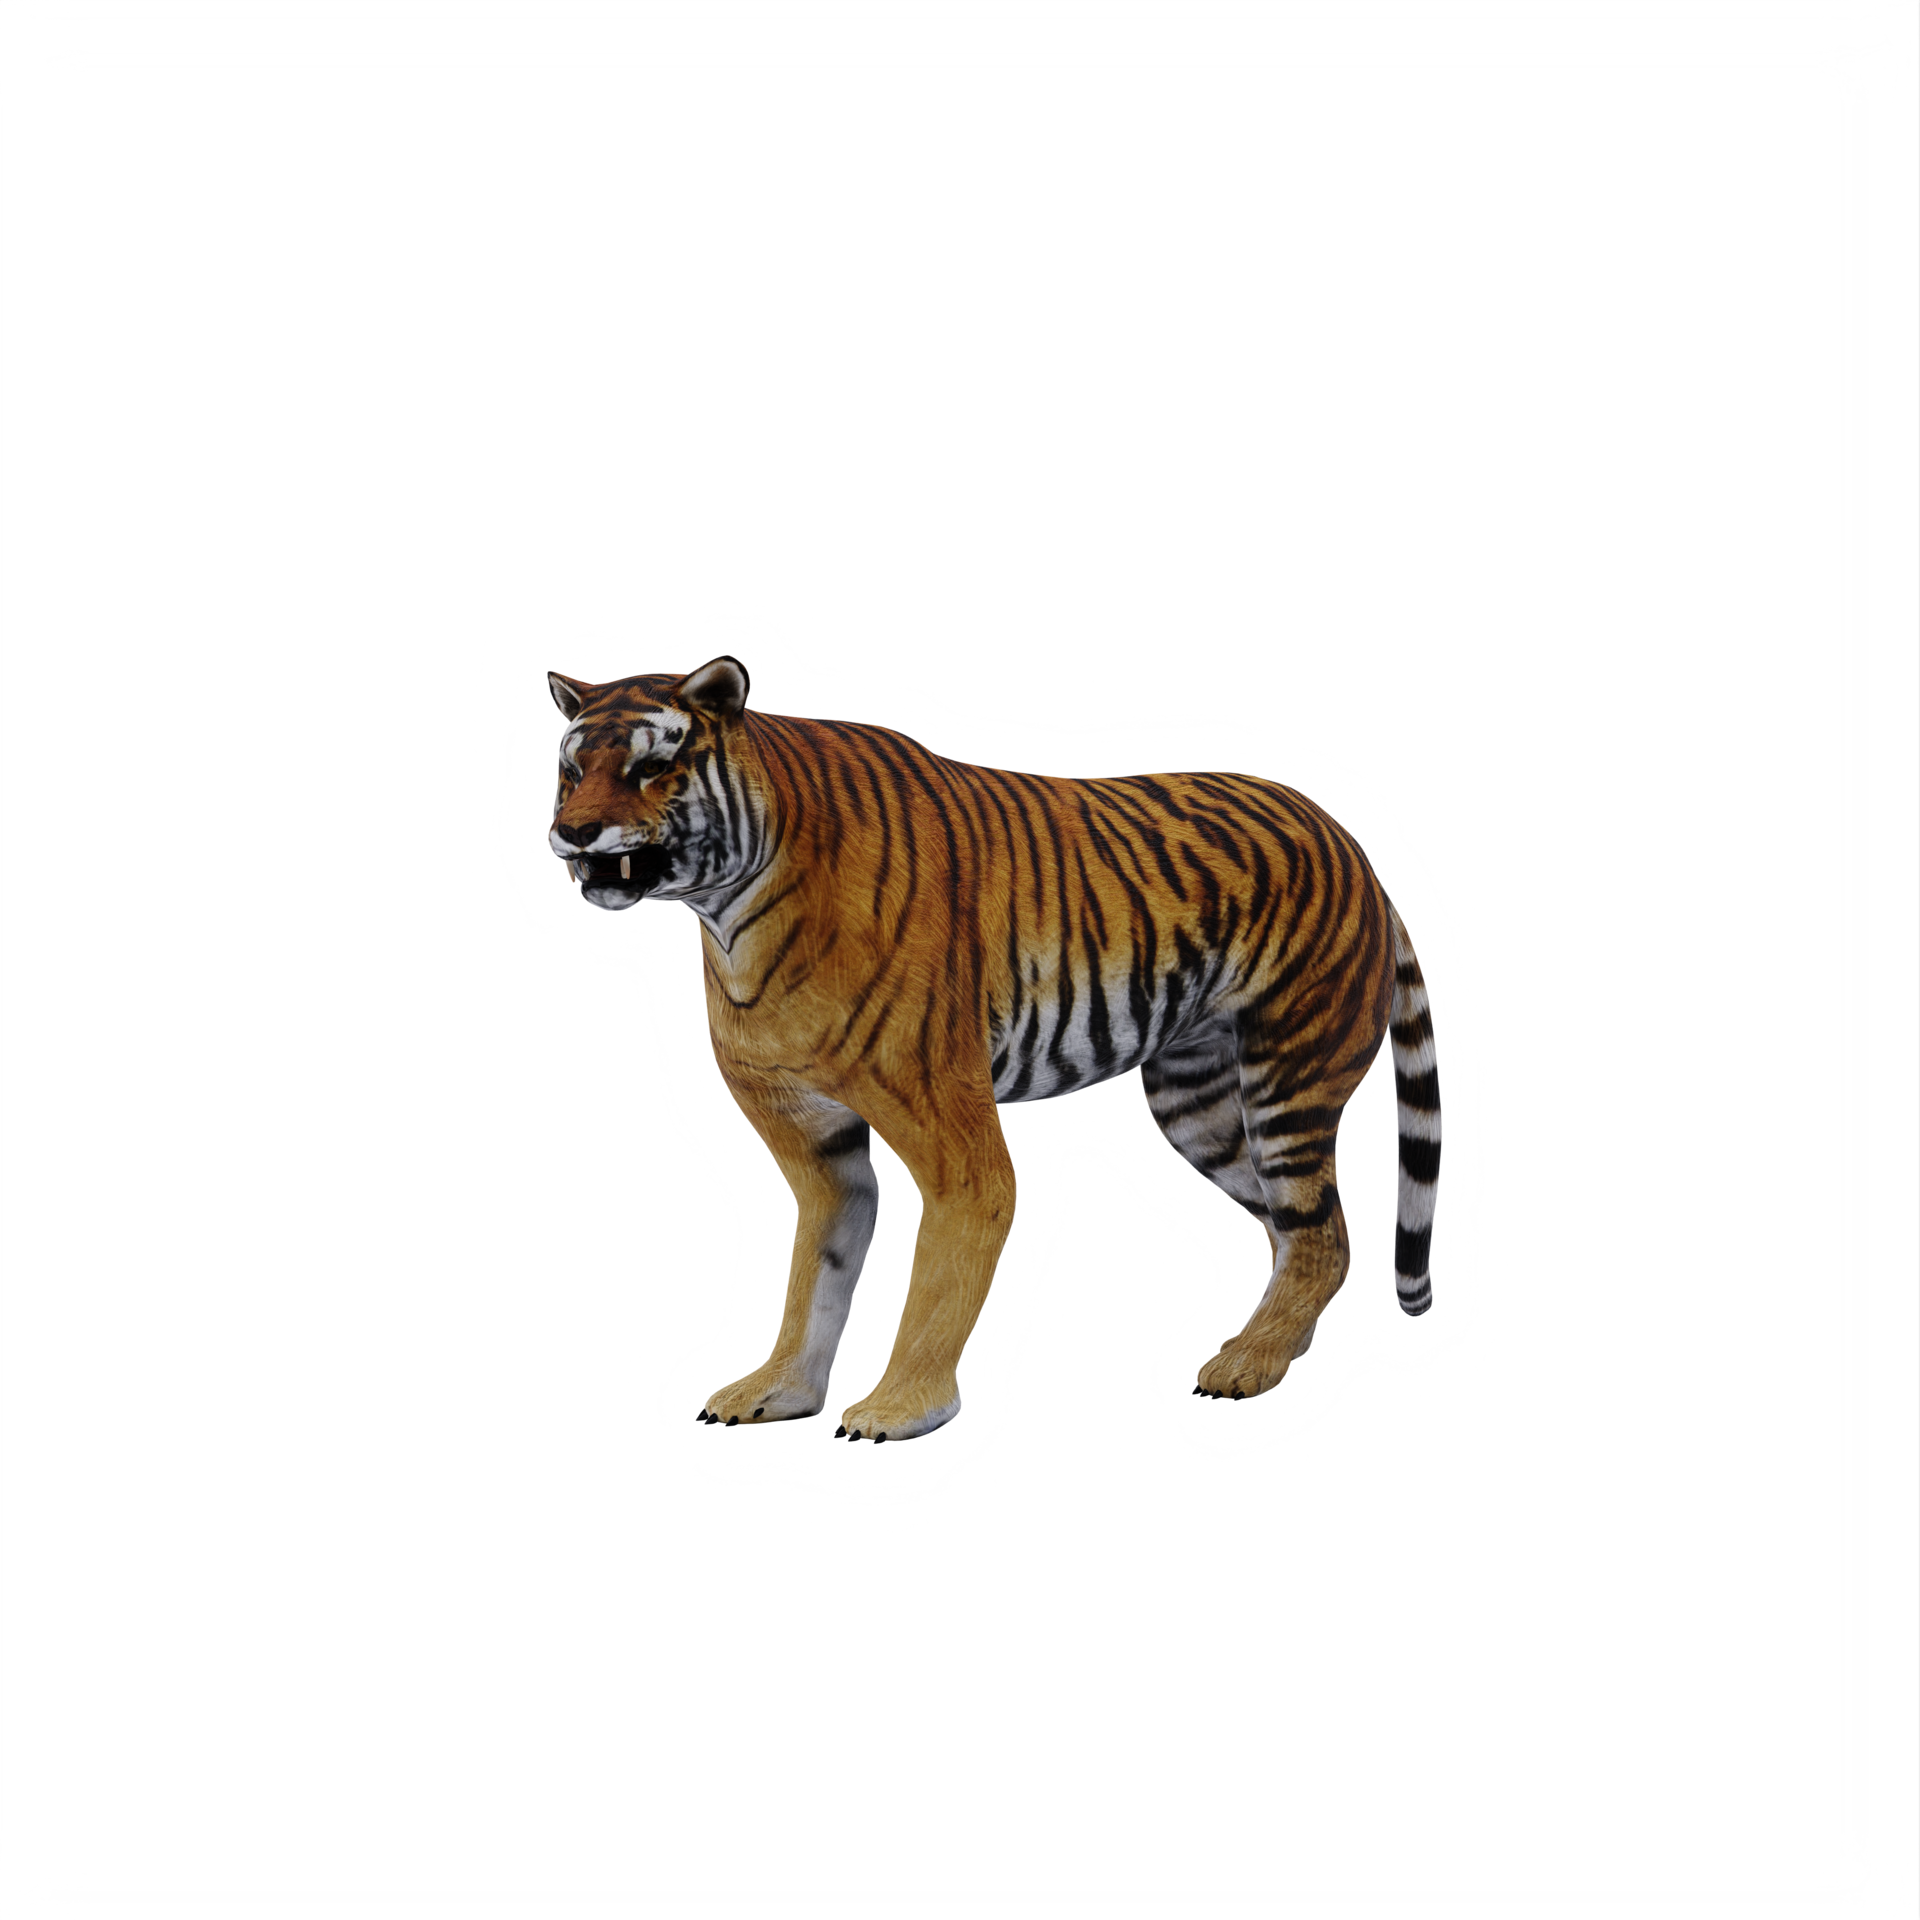 tigre 3d isolado 18875963 PNG